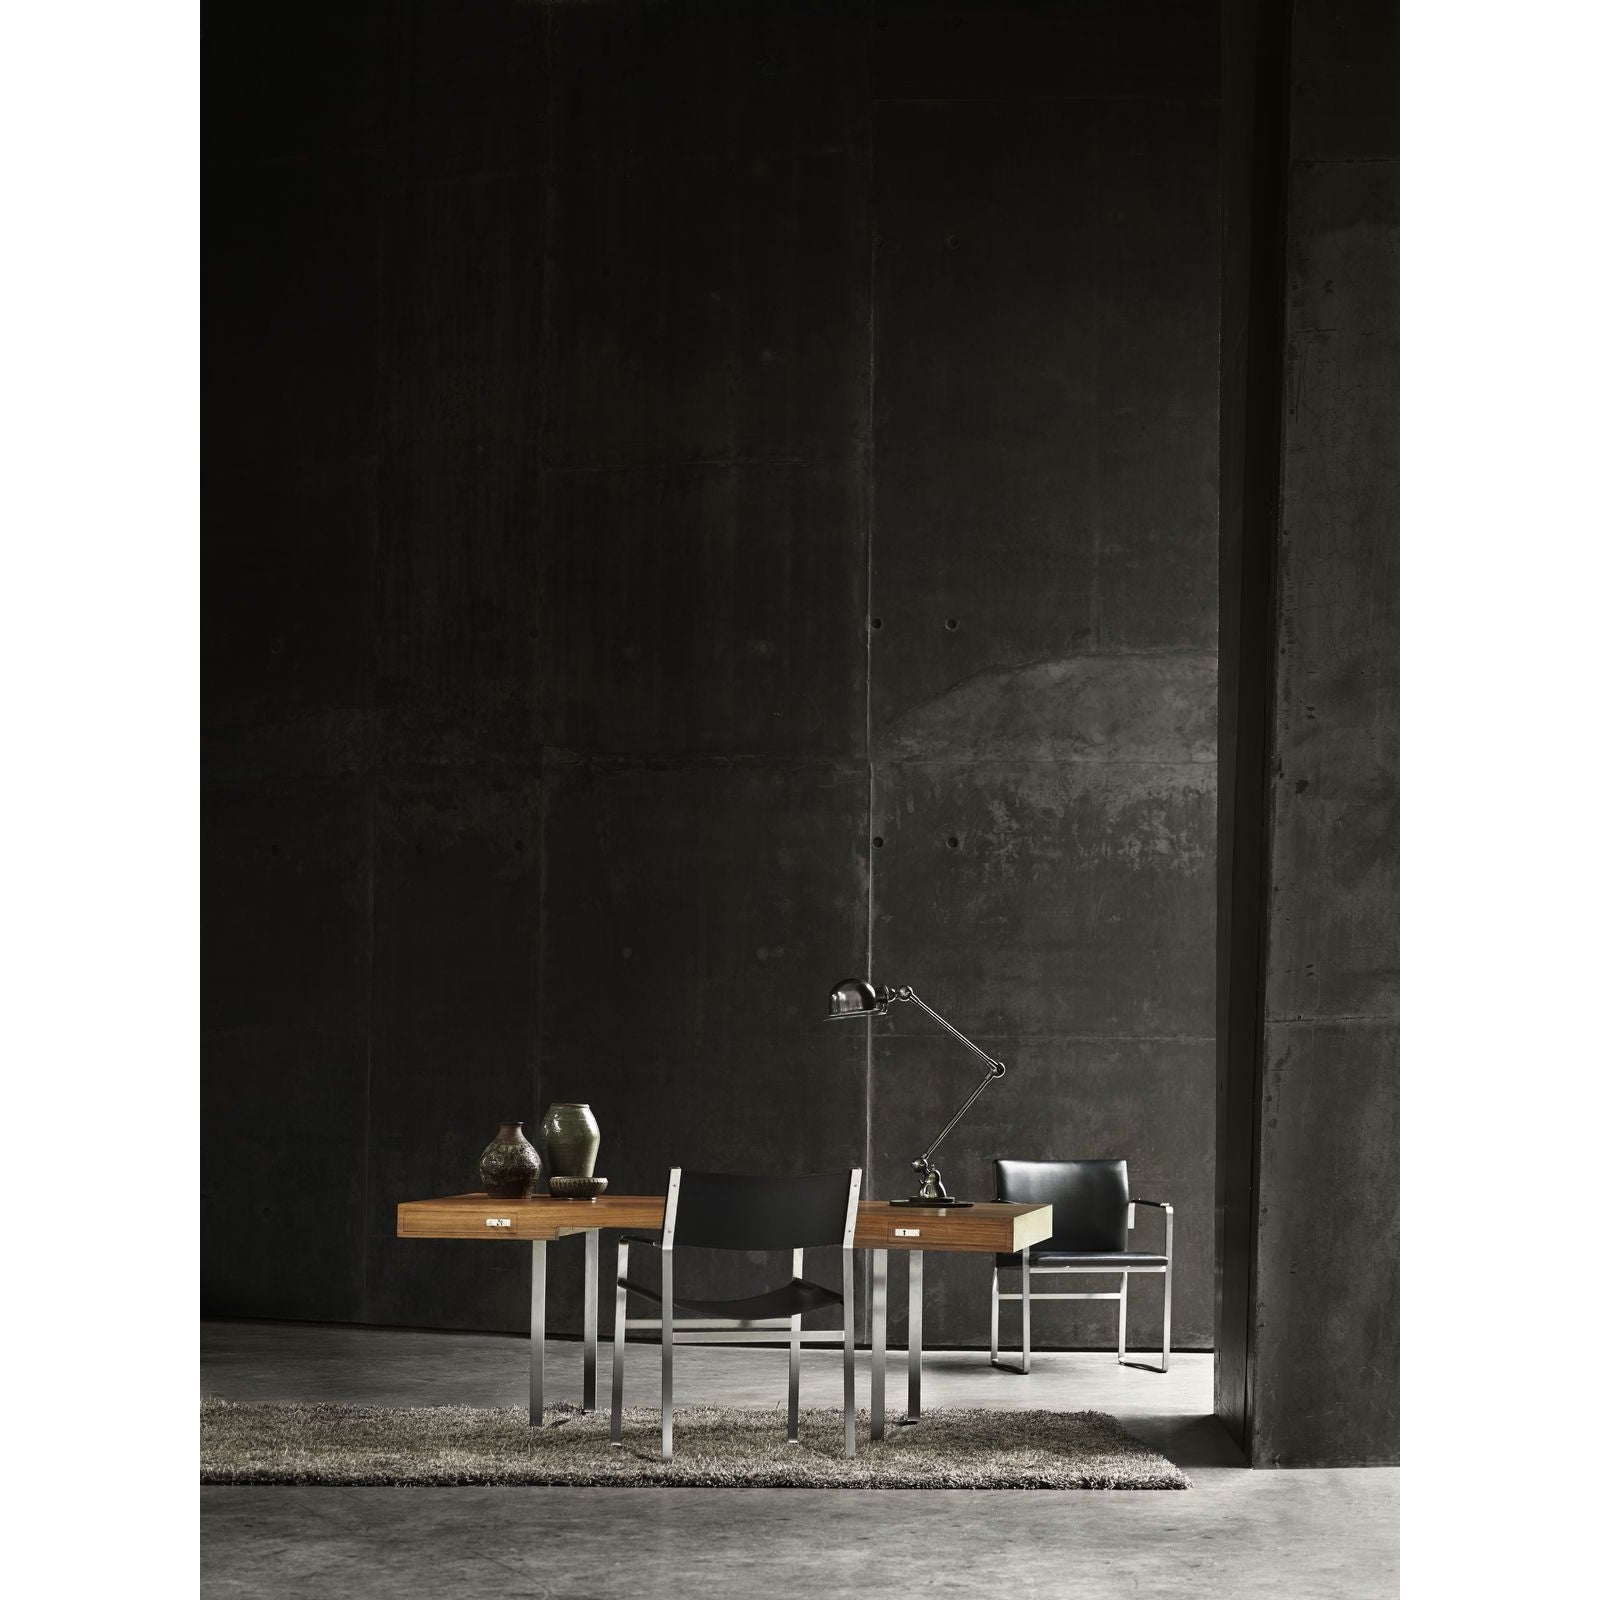 Carl Hansen CH111 -stoel, staal/zwart leer